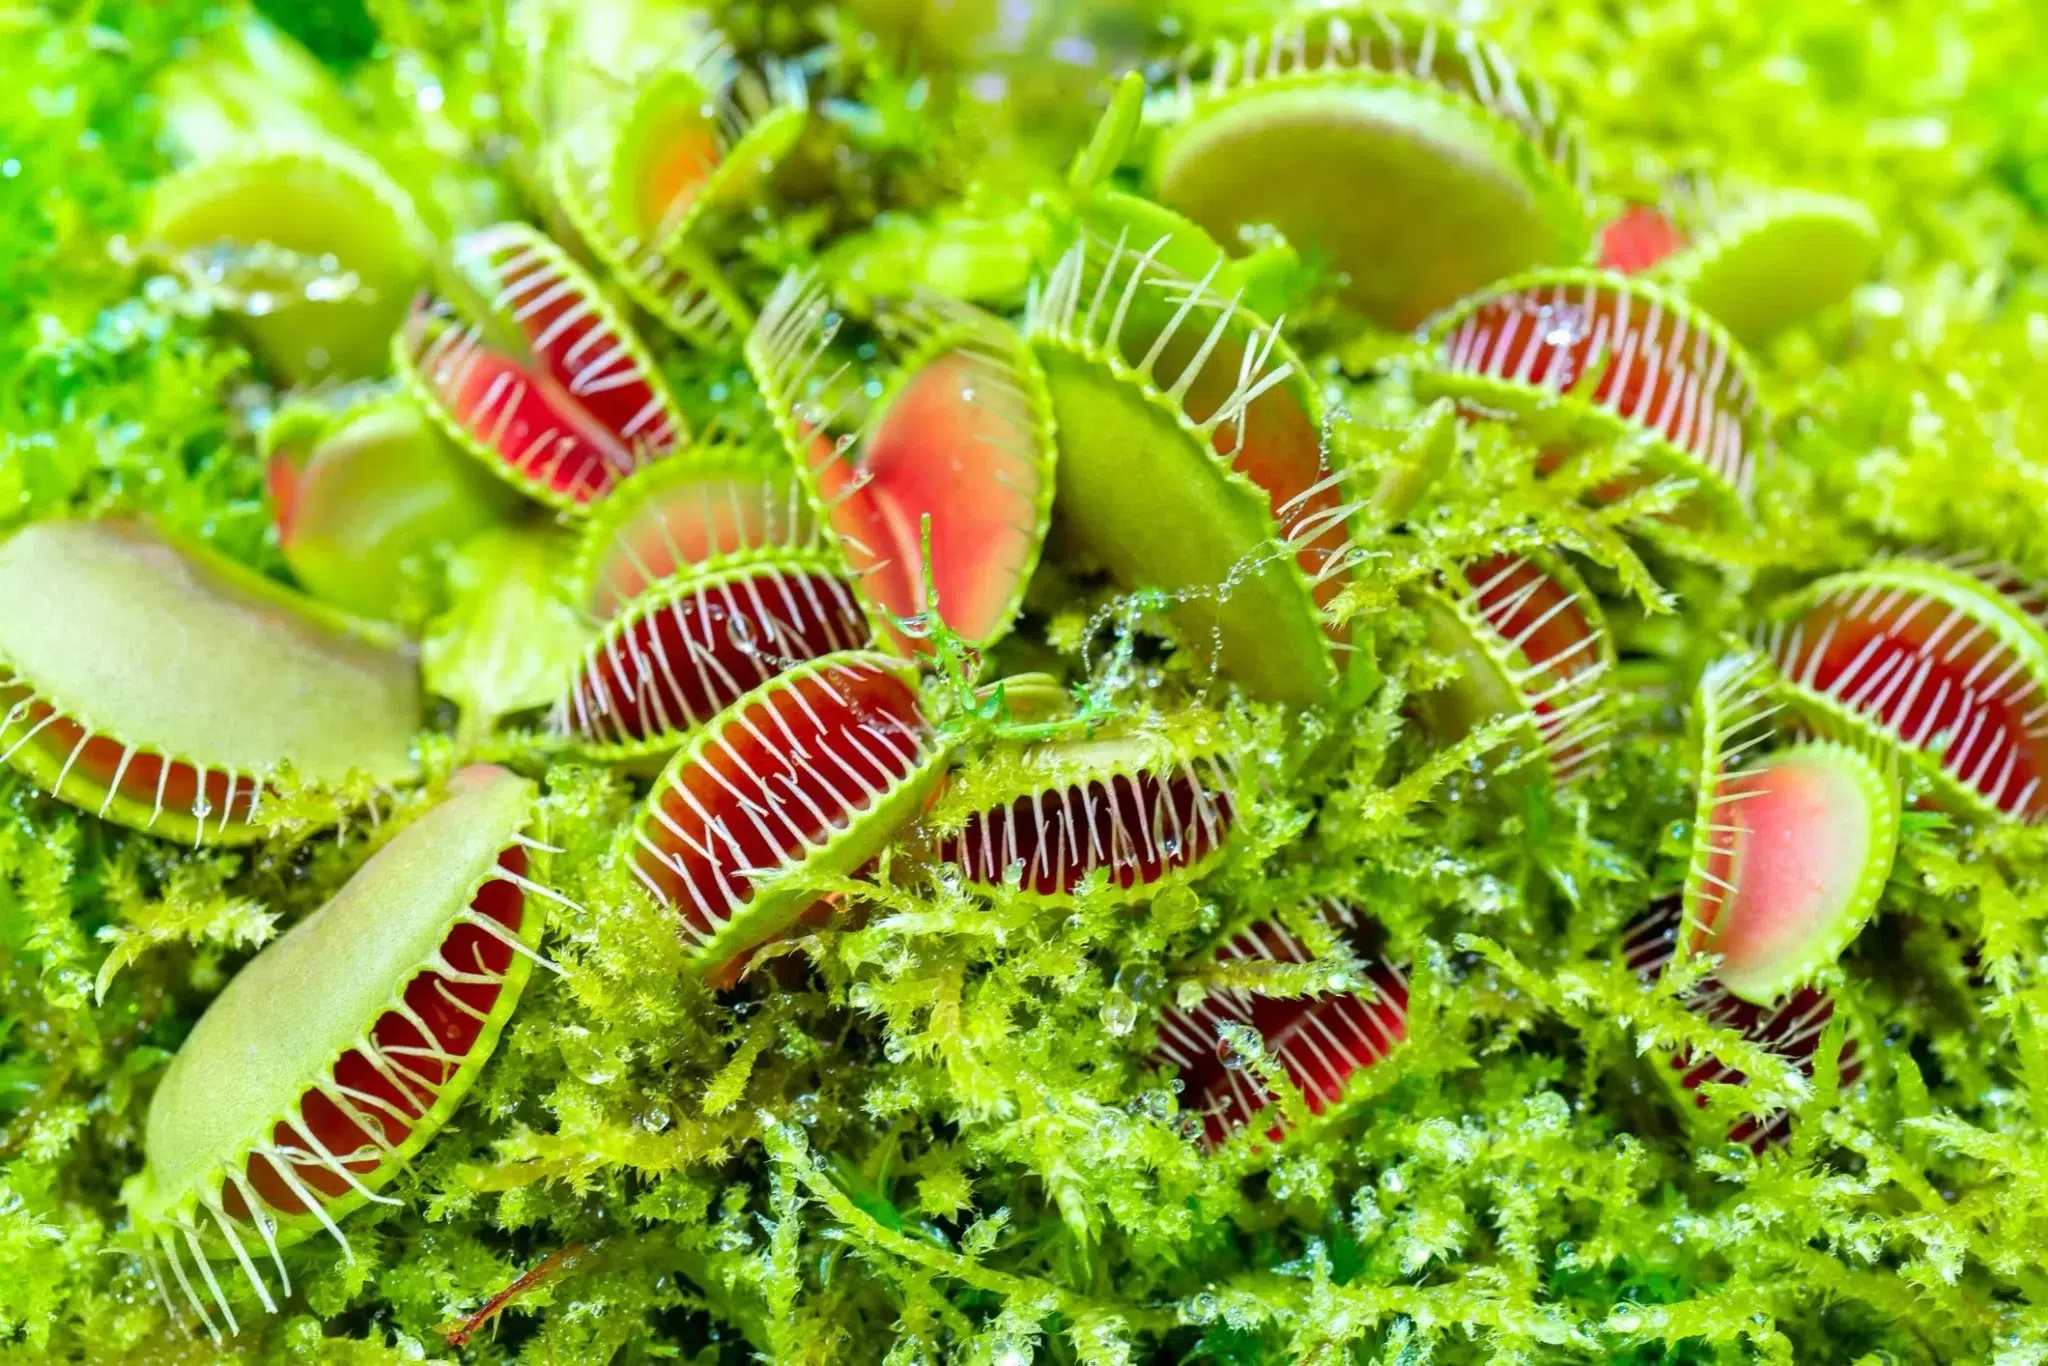 الفايتشيا (Venus flytrap)